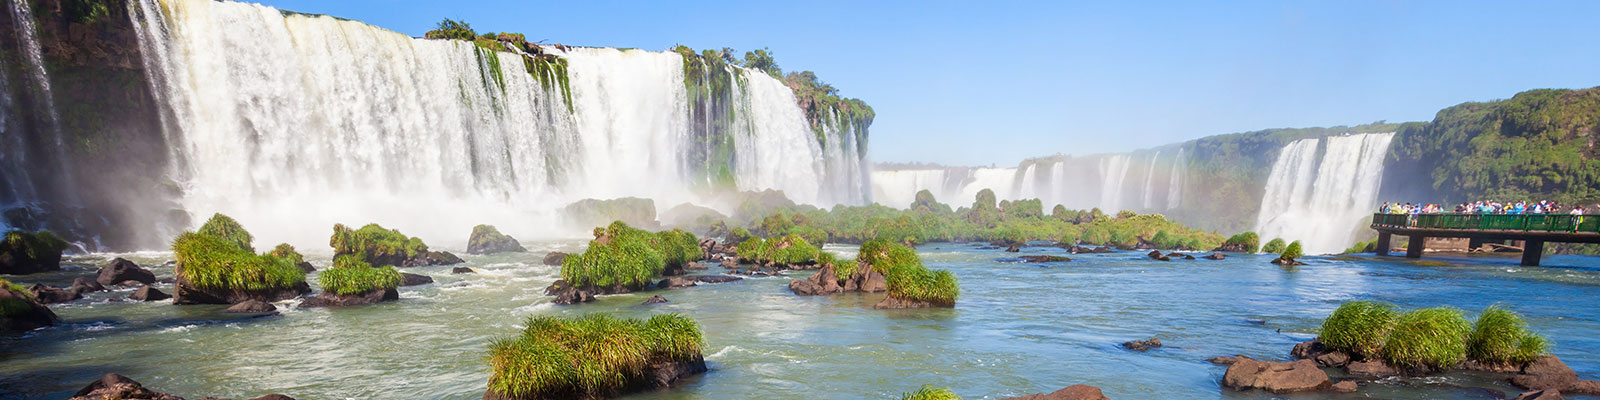 Cascadas de Iguazú, Argentina